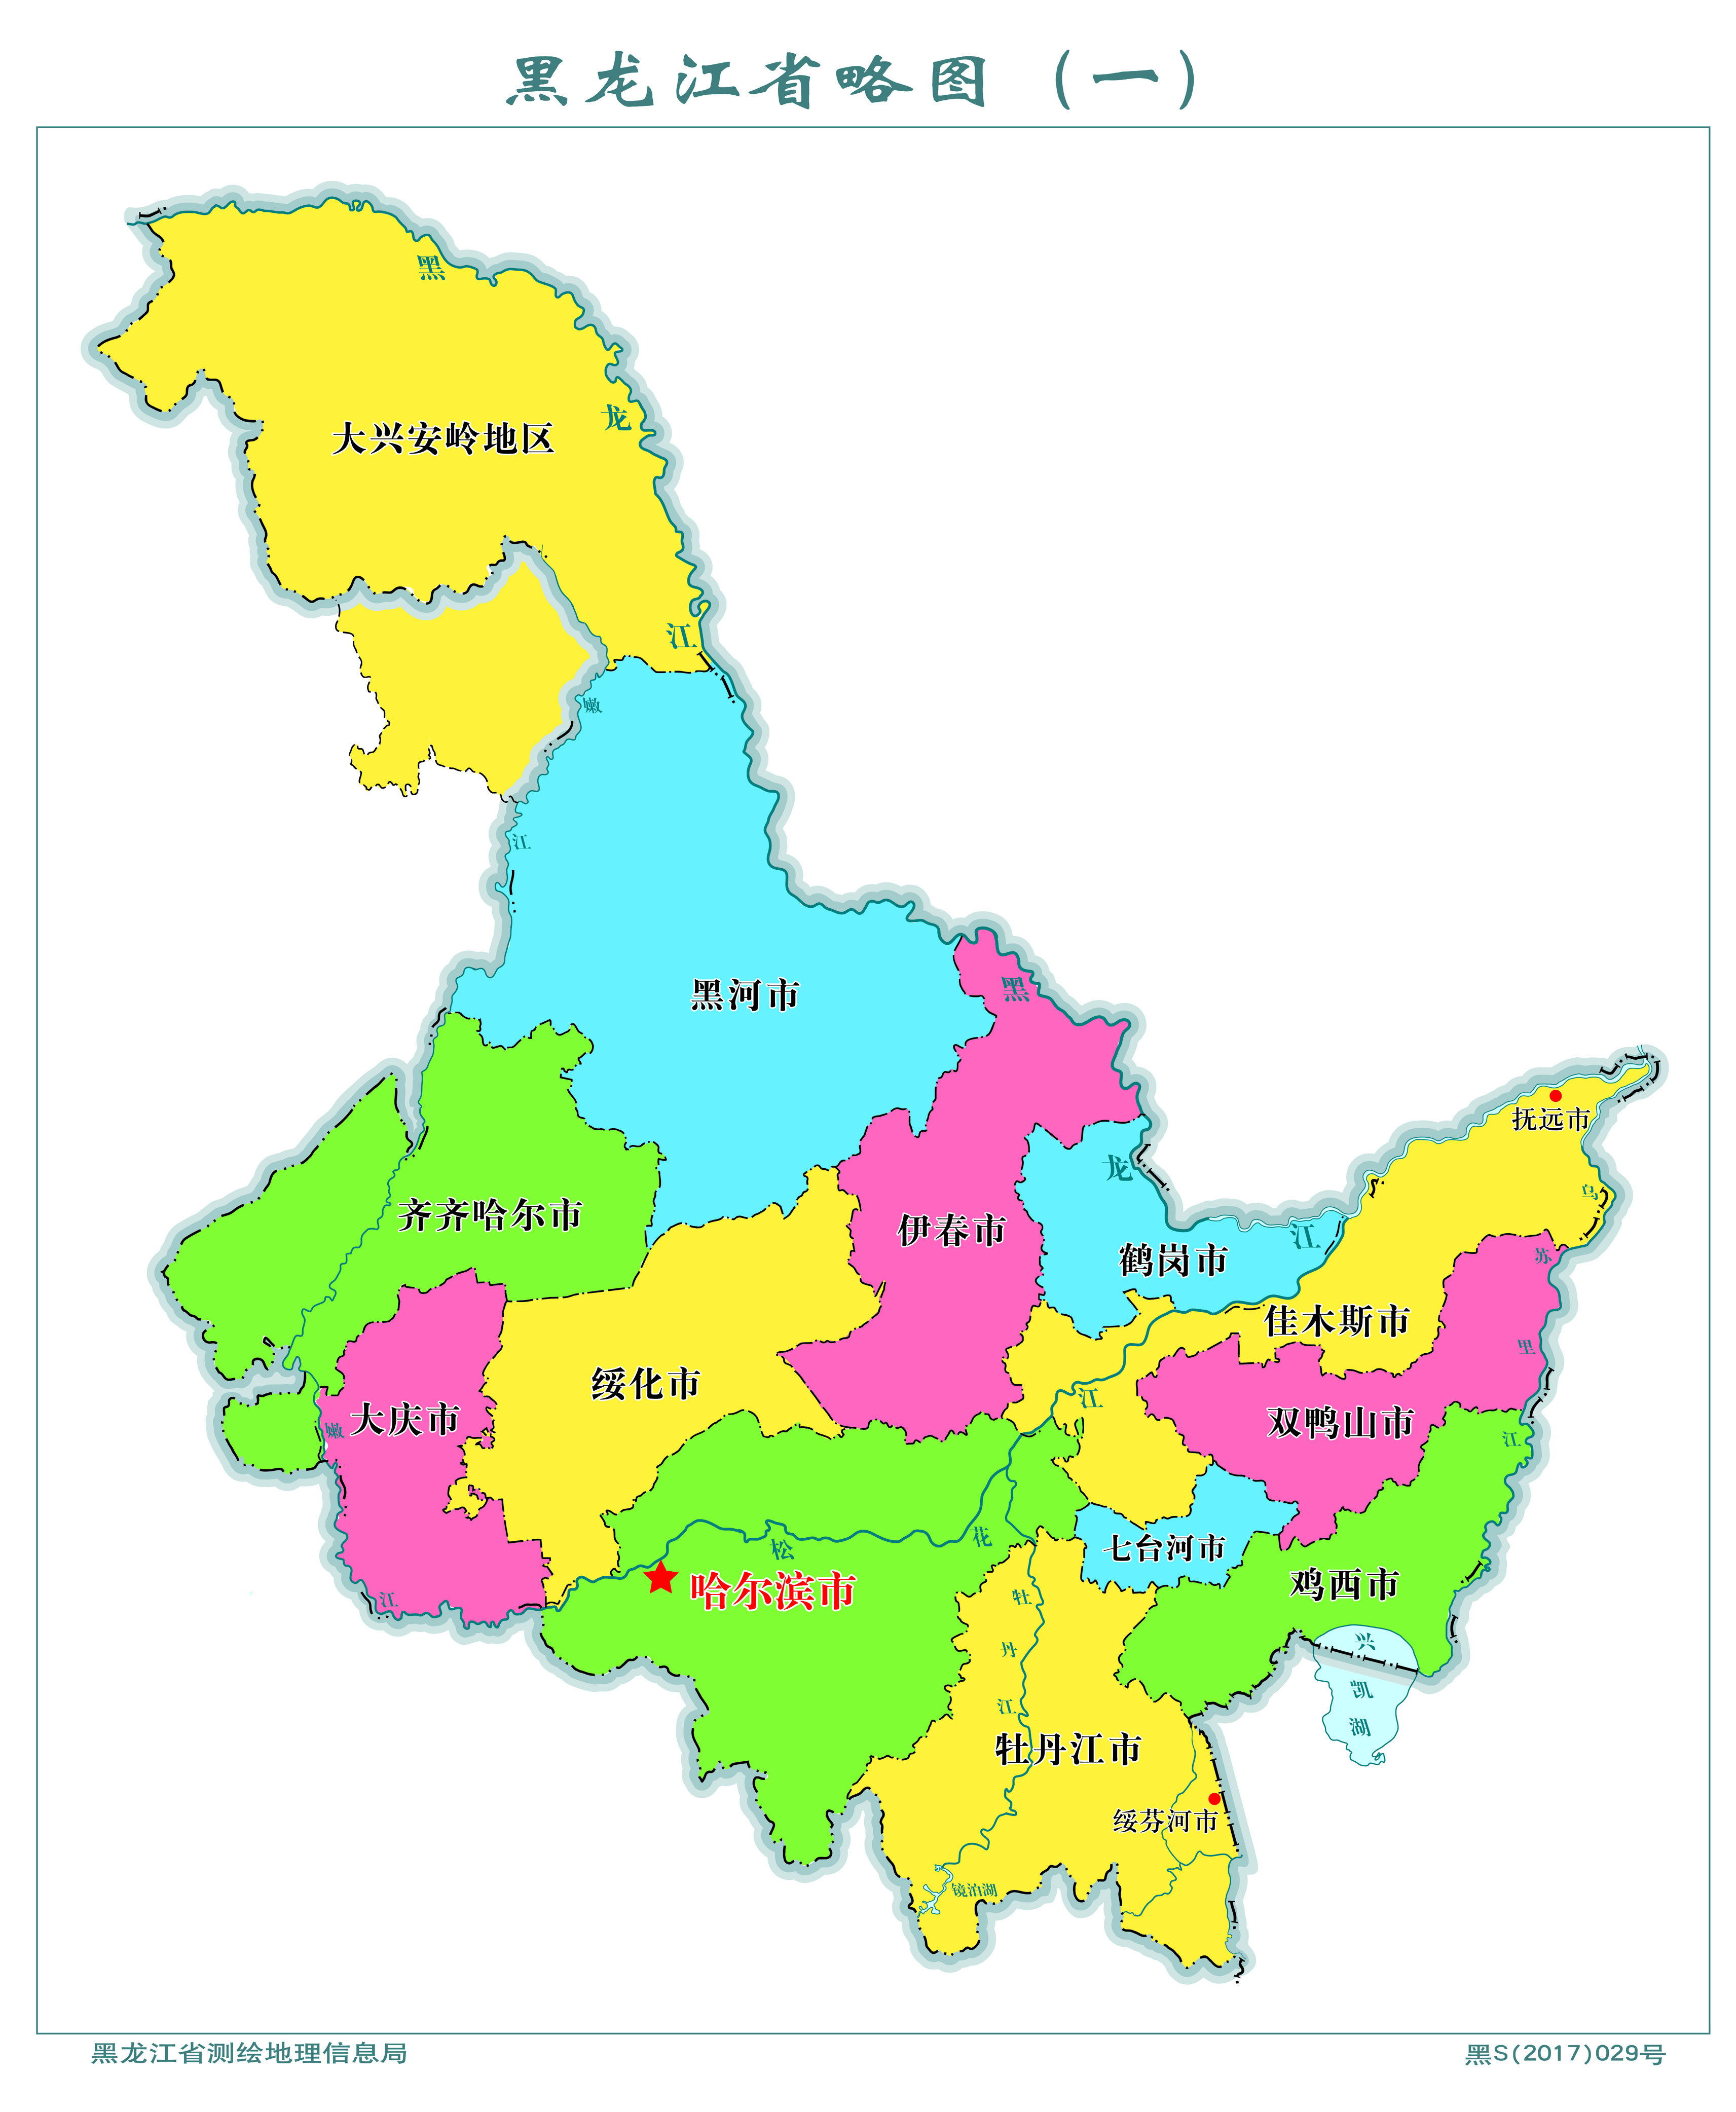 绥化市人口376万黑龙江省拥有一个特大城市:齐齐哈尔市